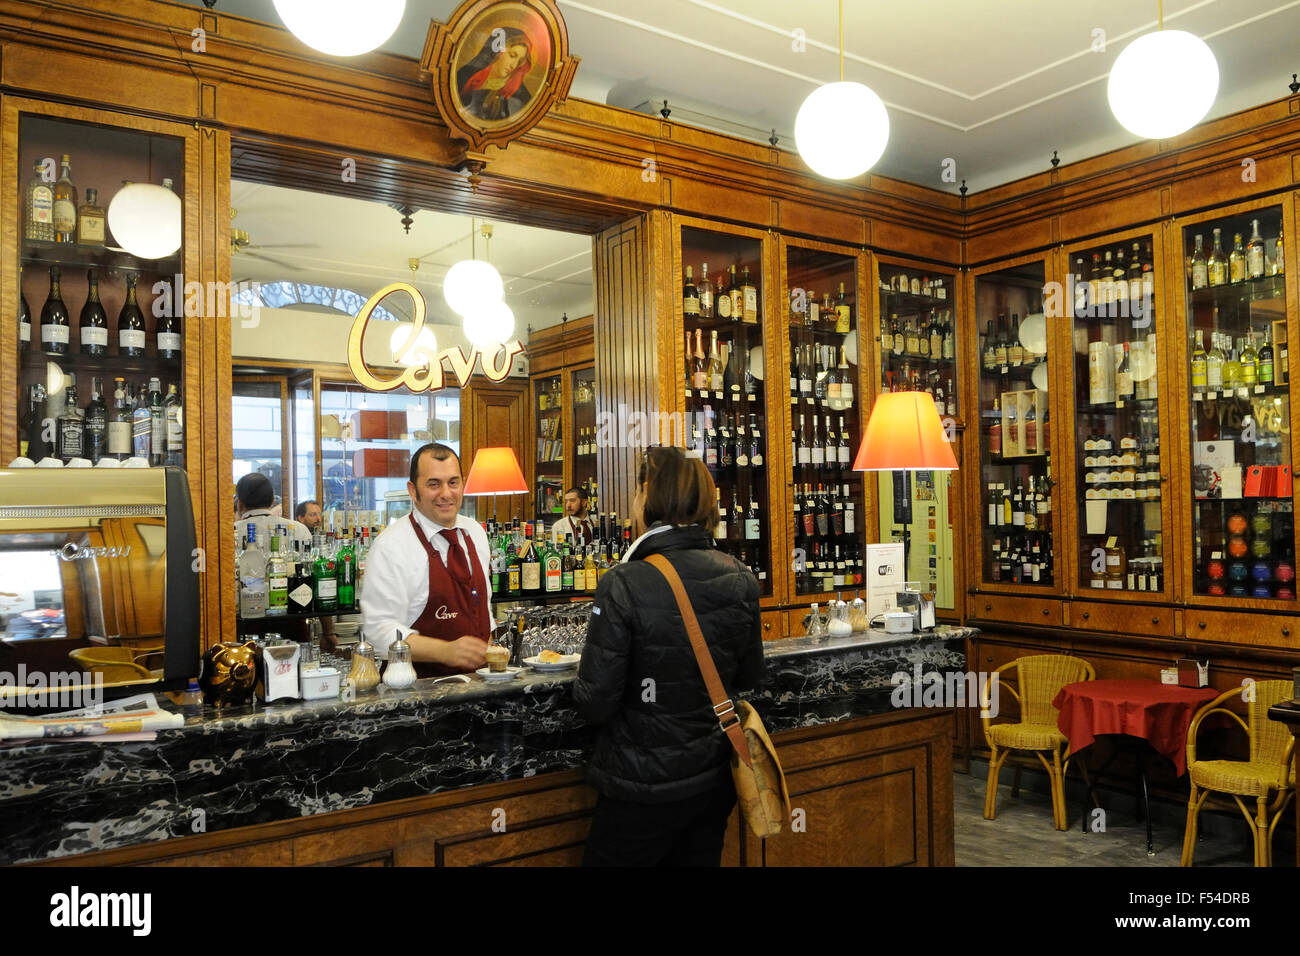 Cavo storico cafè, Via di Fossatello, Genova, Liguria, Italia, Europa Foto  stock - Alamy